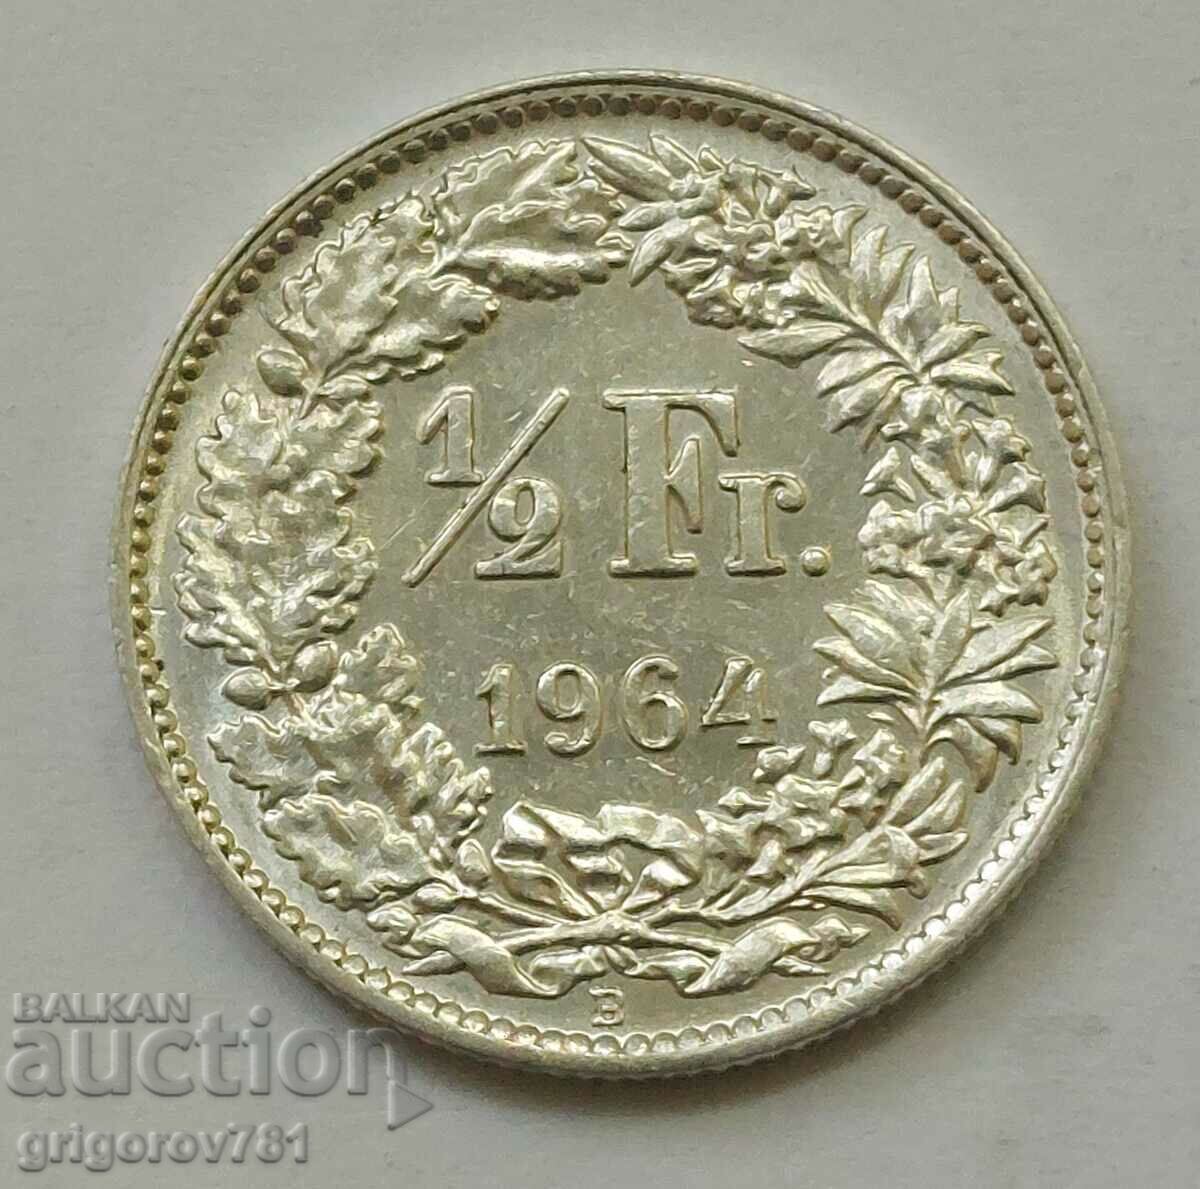 Ασημένιο φράγκο 1/2 Ελβετία 1964 Β - Ασημένιο νόμισμα #147